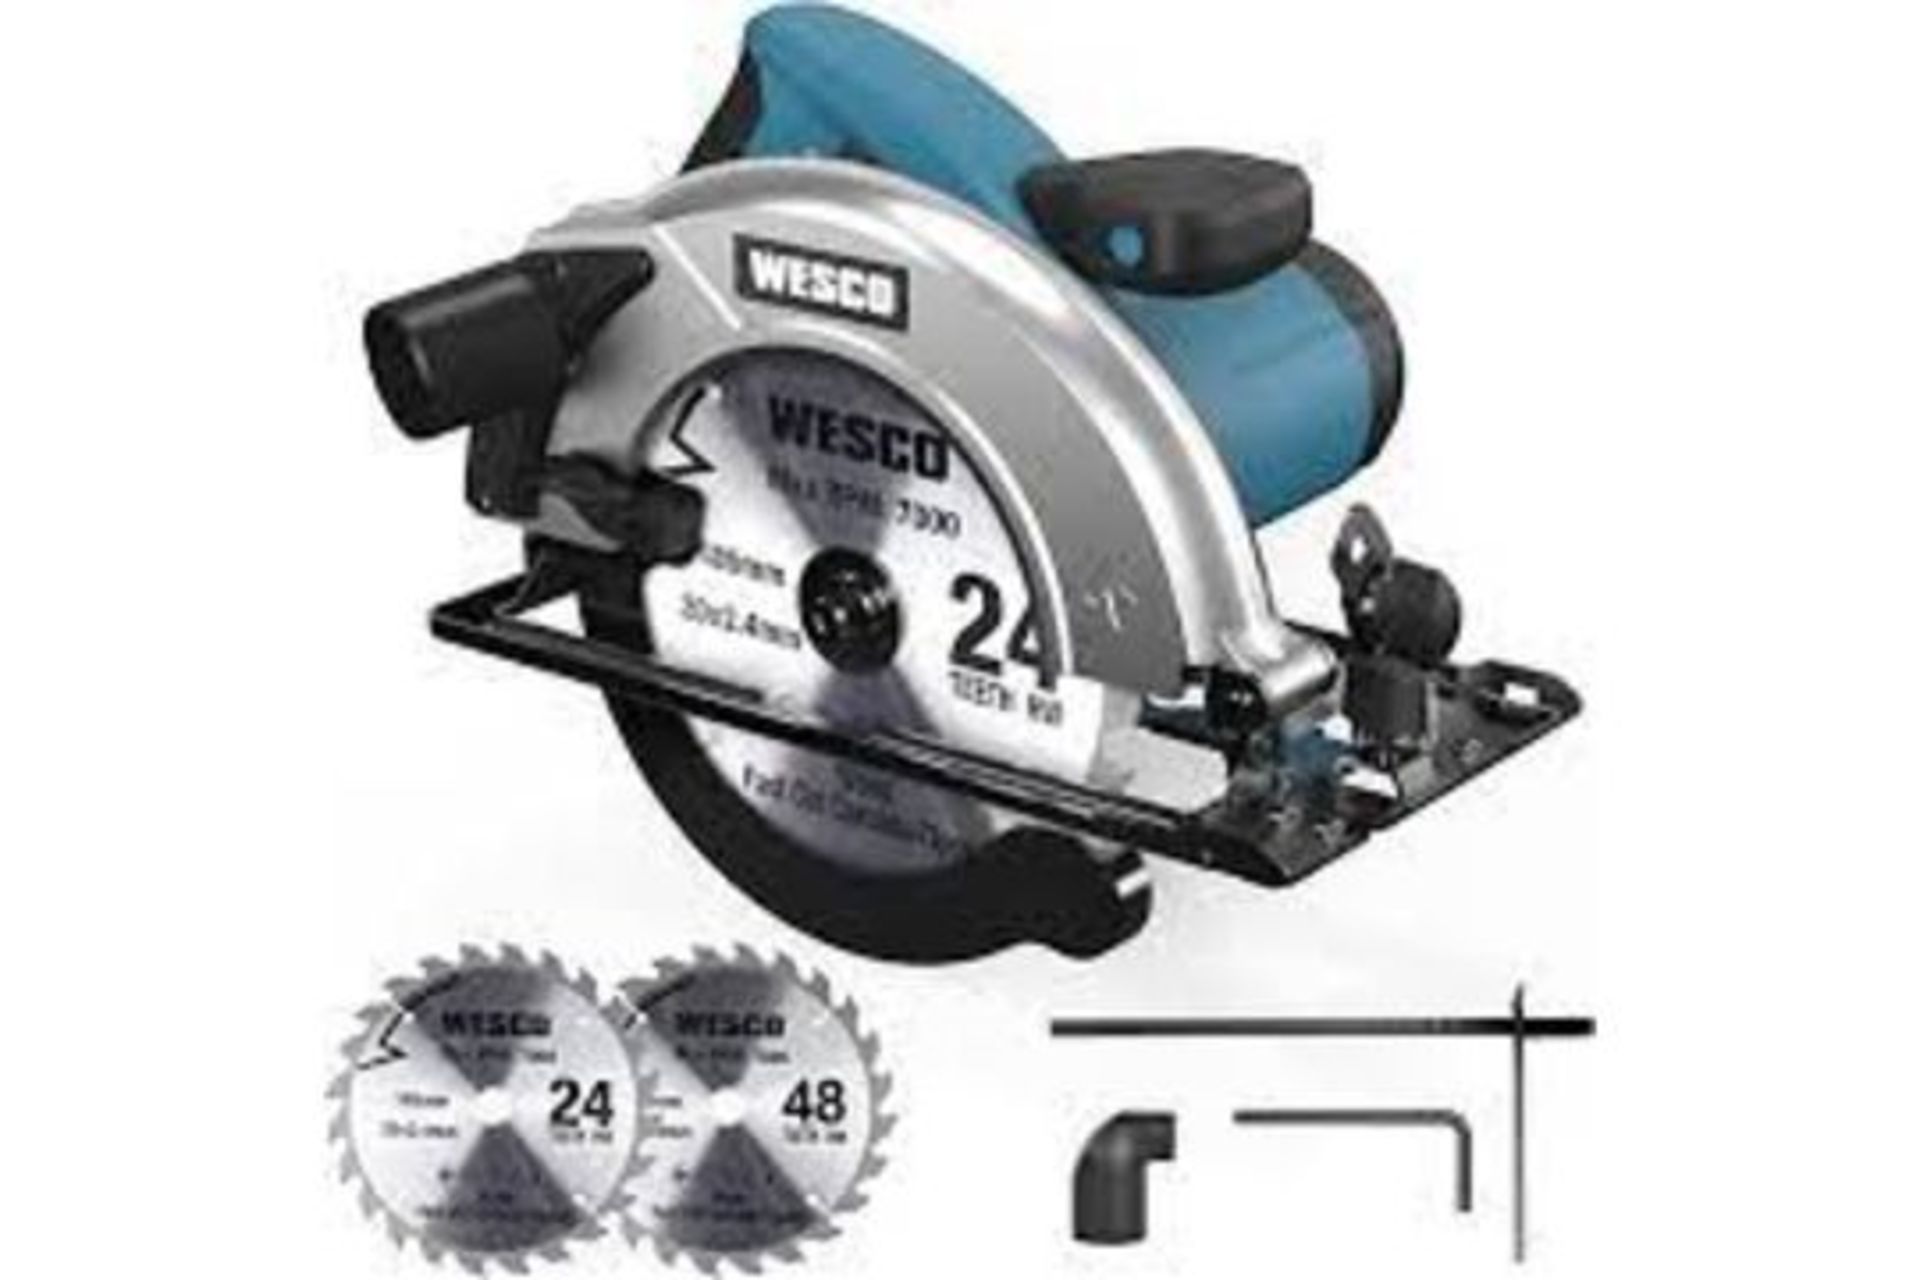 2 x New & Boxed WESCO Circular Saw 1400W 5800 RPM Skill Saw. Cutting Depth: 90°: 65mm-45°: 45mm.